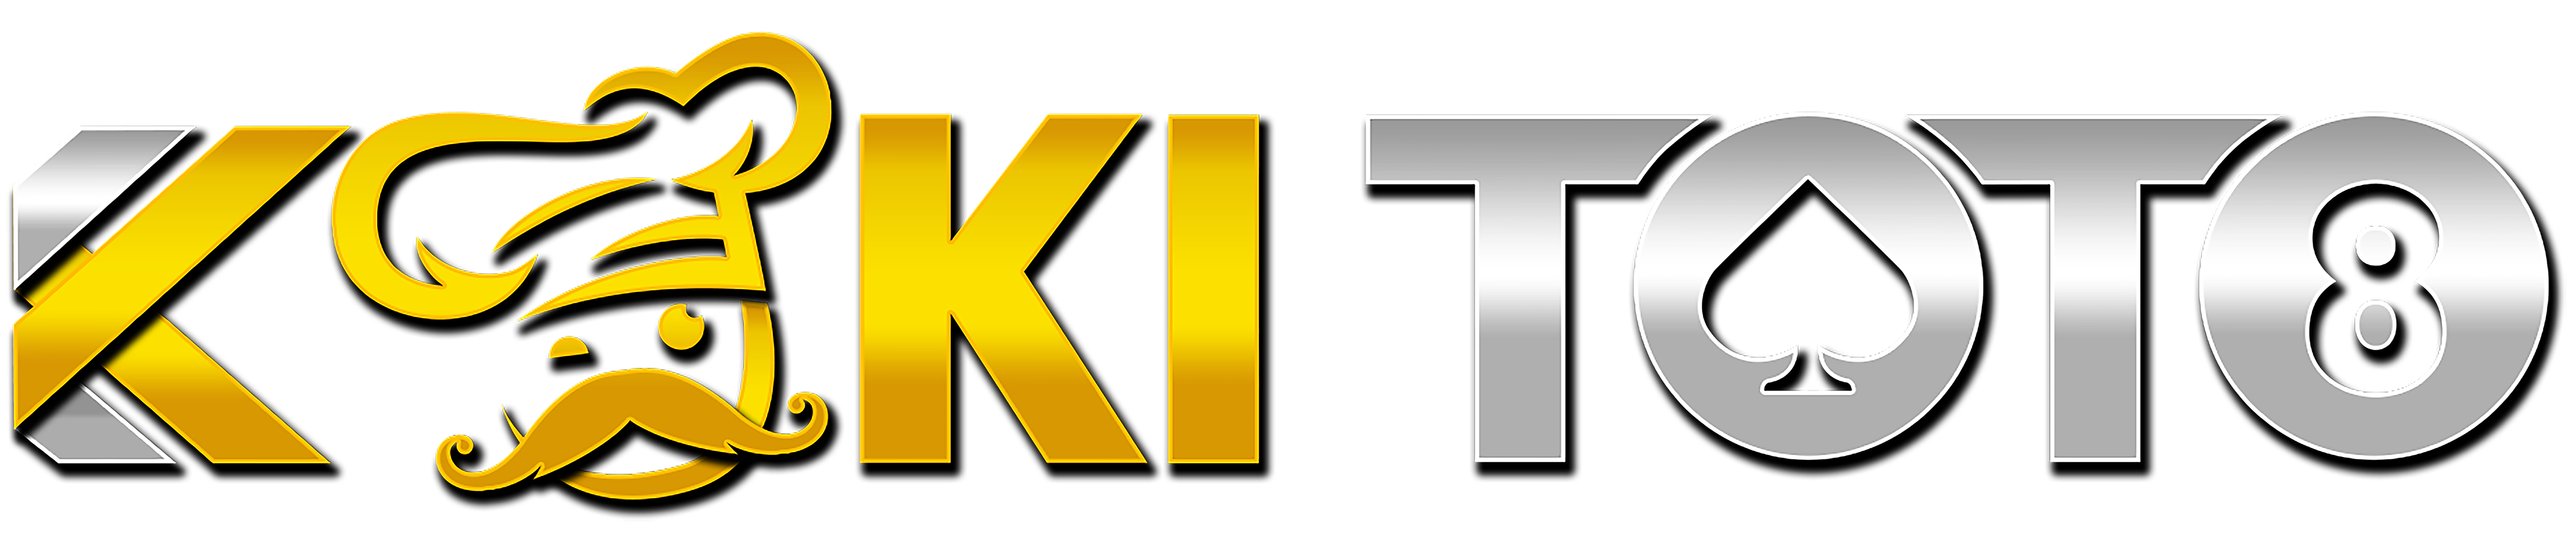 logo panduan lengkap KOKITOTO